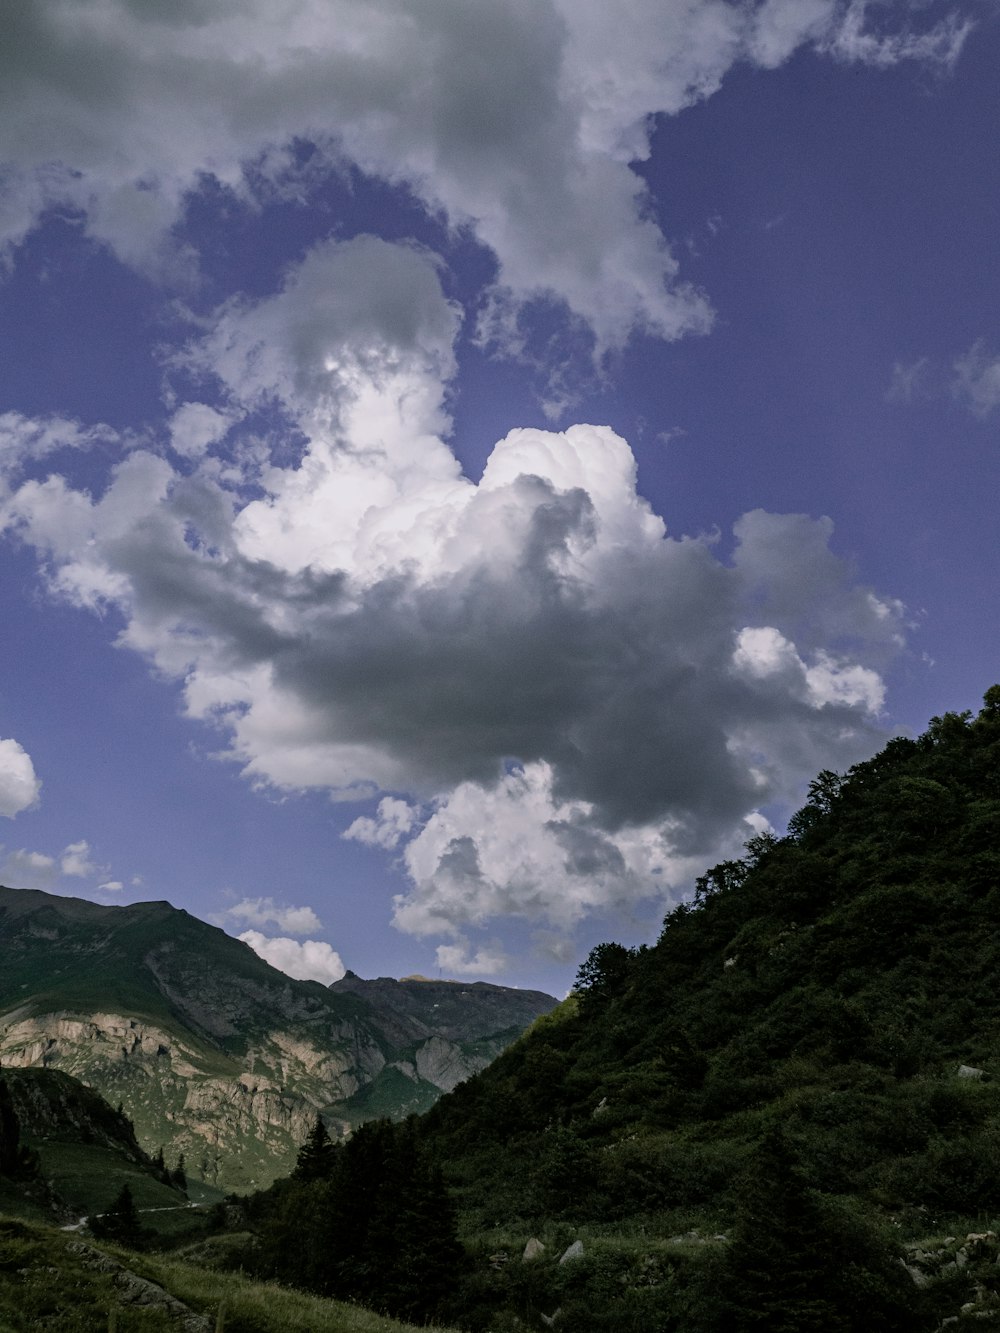 montagna verde sotto nuvole bianche e cielo blu durante il giorno